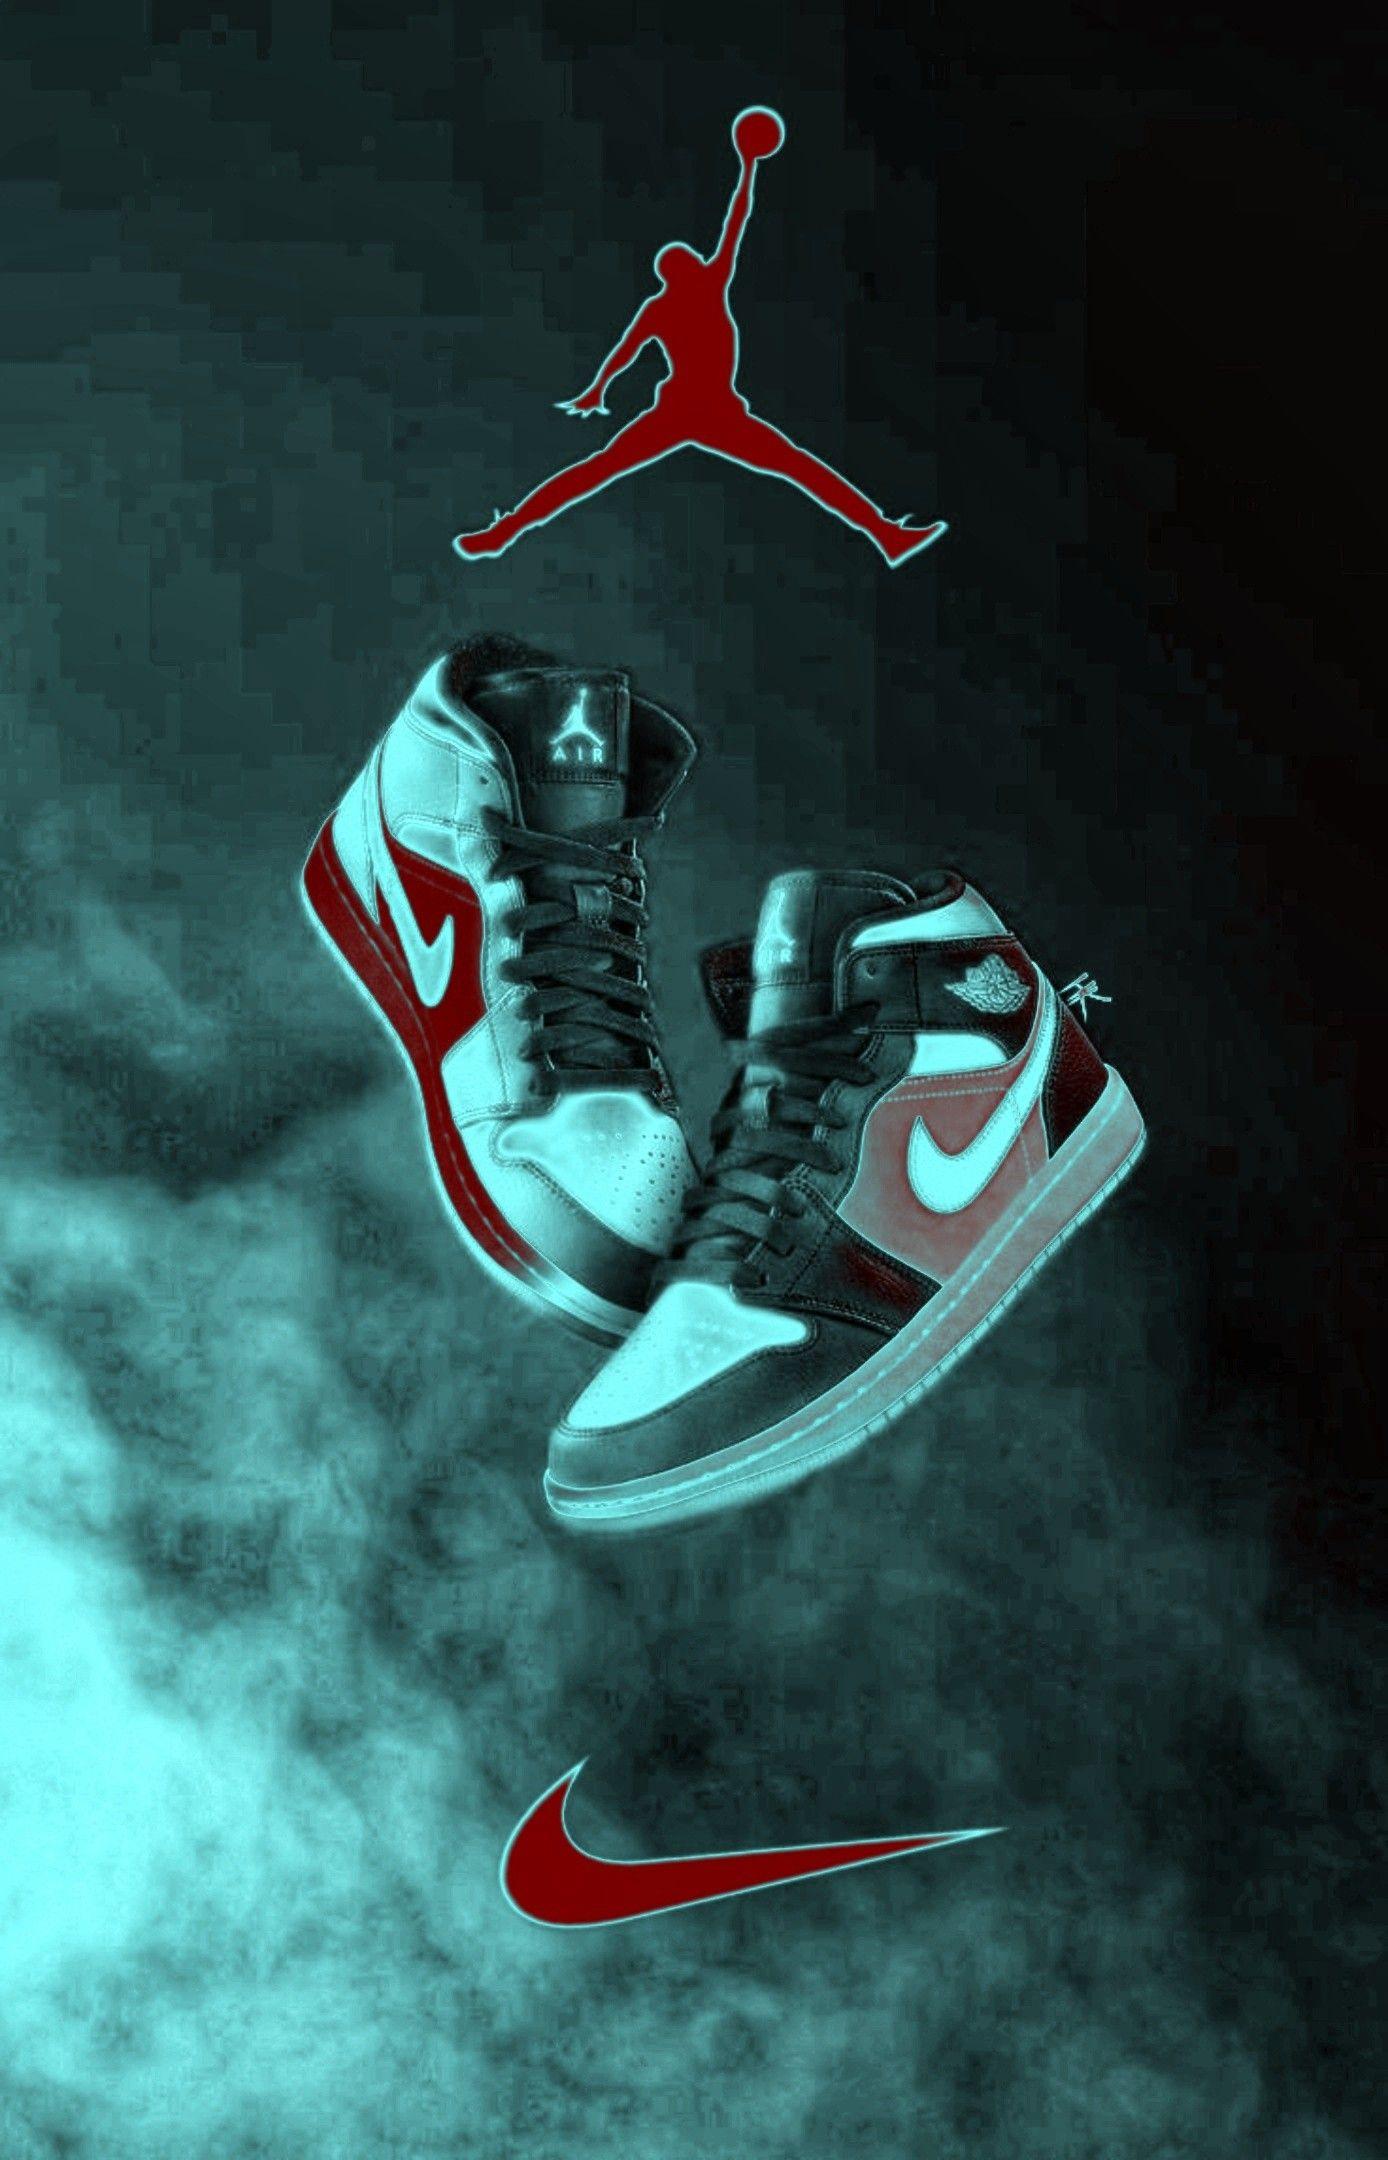 [57+] Nike Jordan 4k Wallpapers | WallpaperSafari